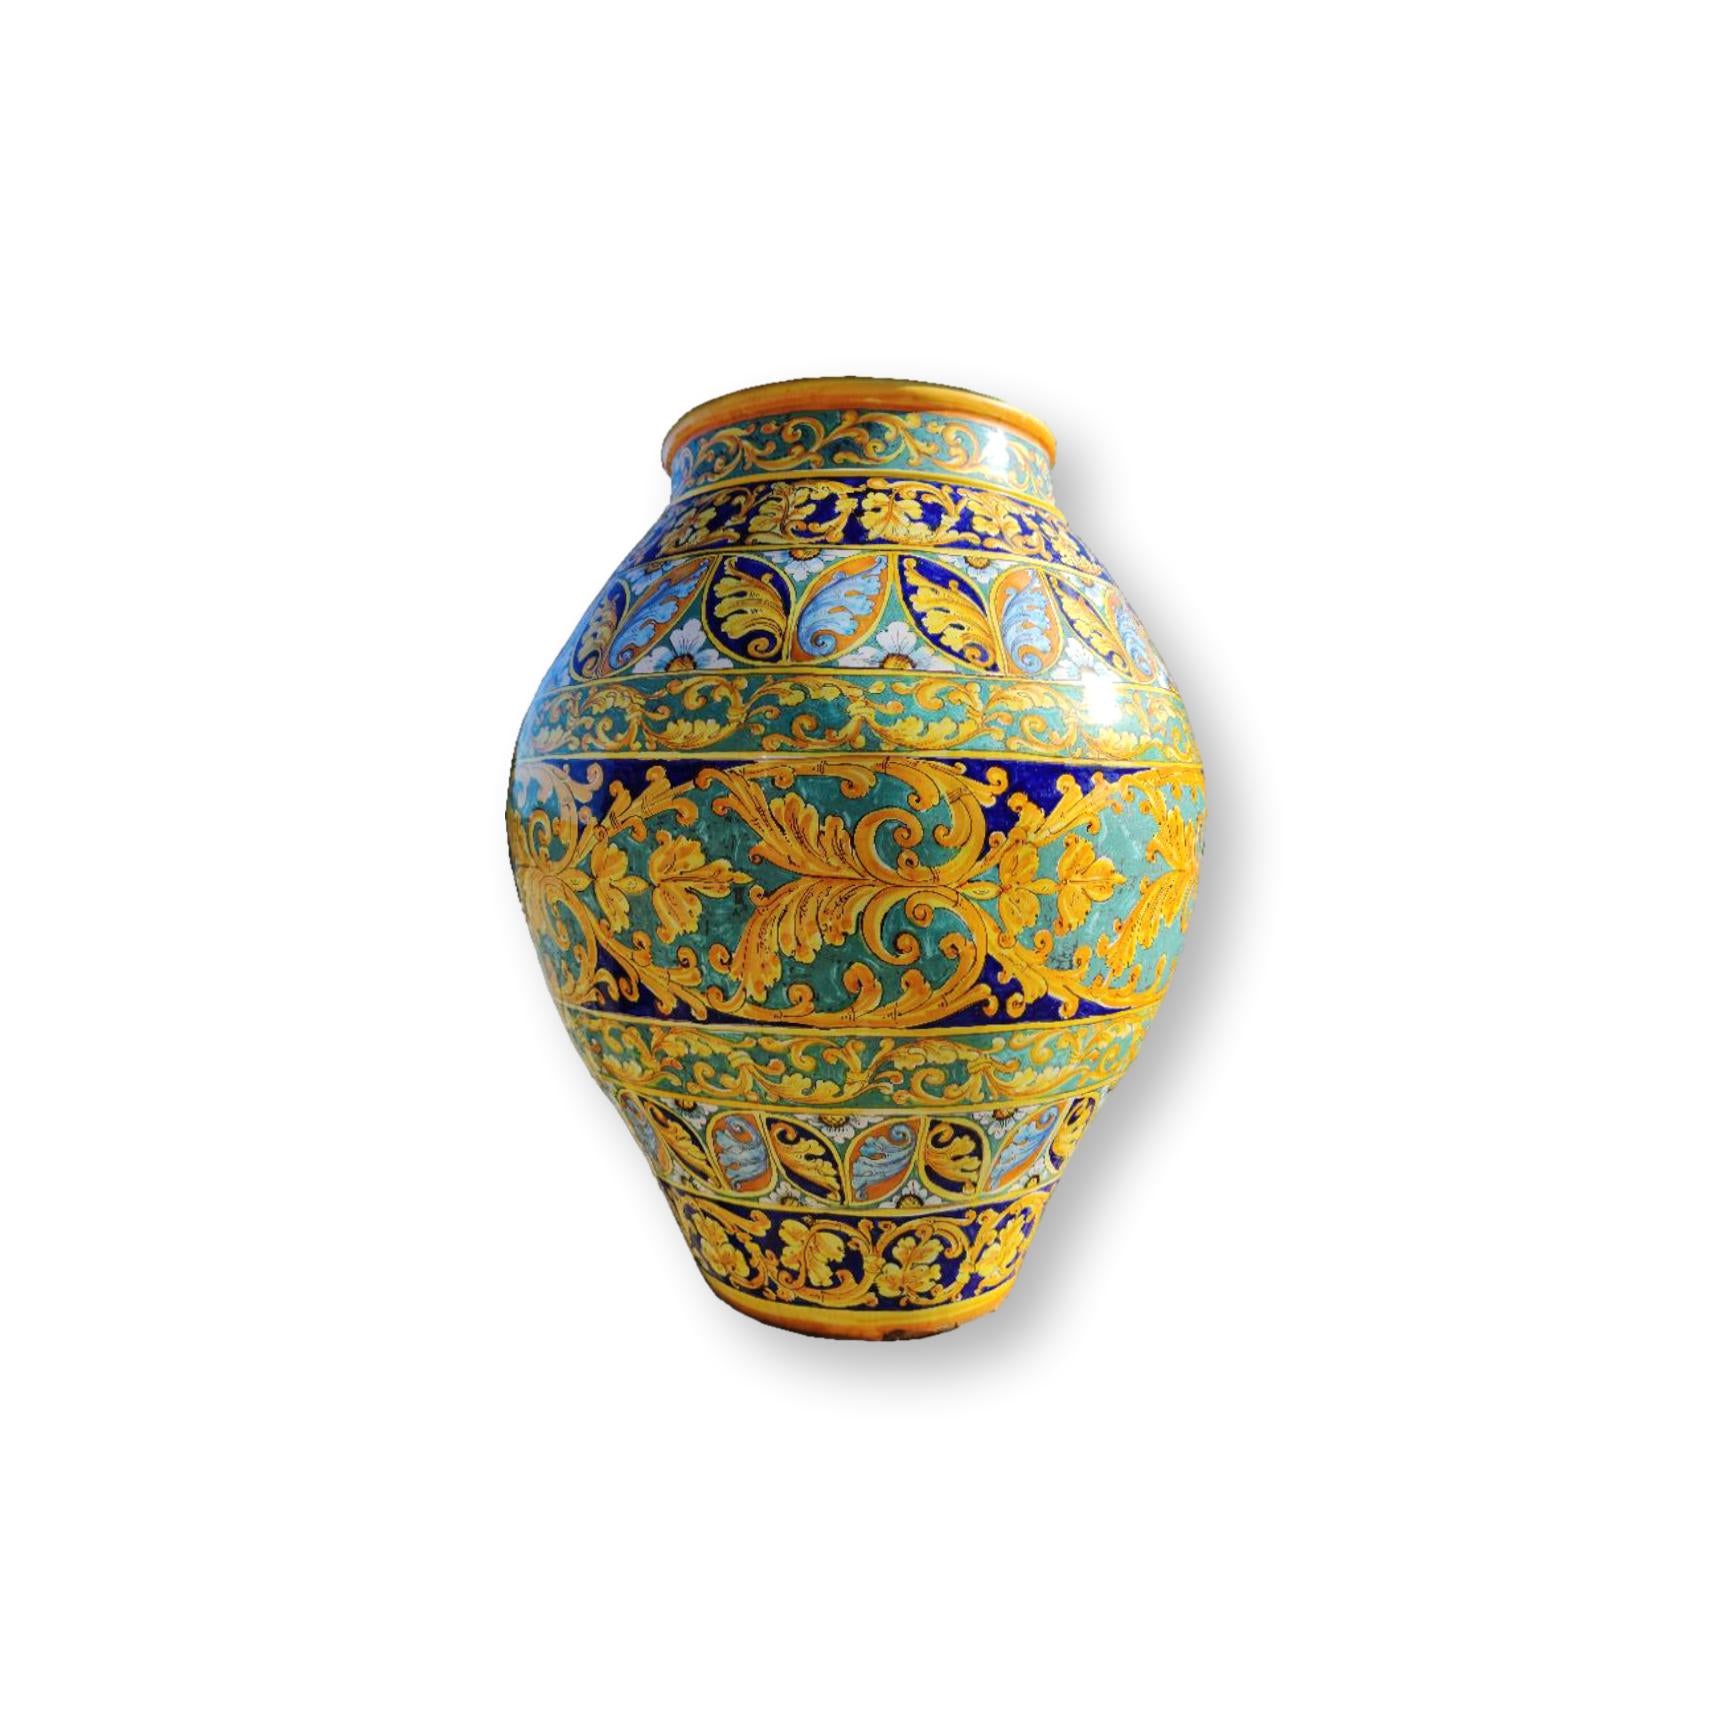 Giara in ceramica dipinta a mano - Ornamento Giallo e Blu